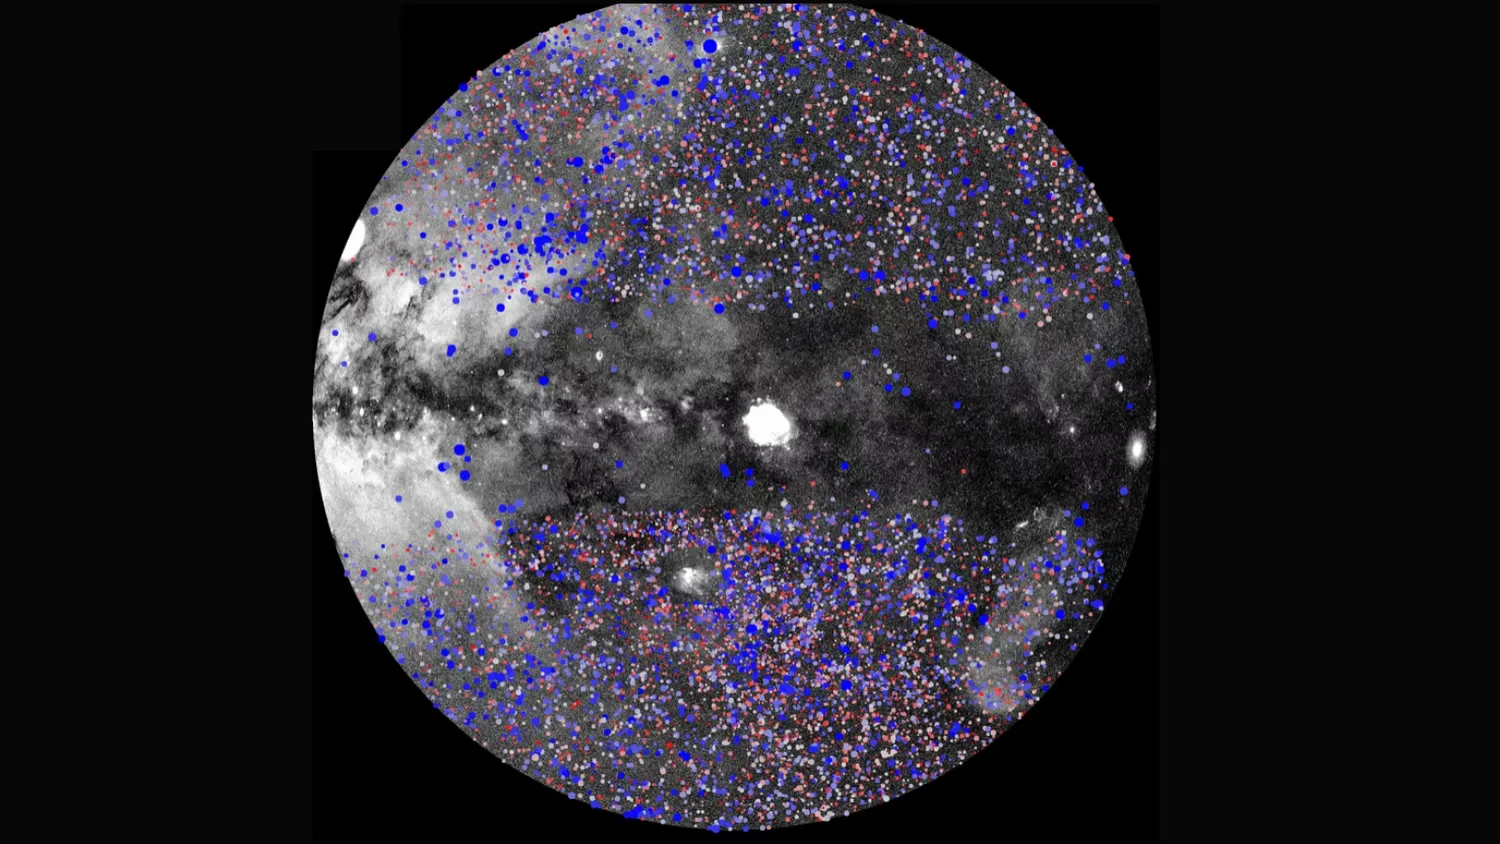 Galaxienhaufen, wie sie von der eROSITA-All-Sky-Durchmusterung gesehen werden